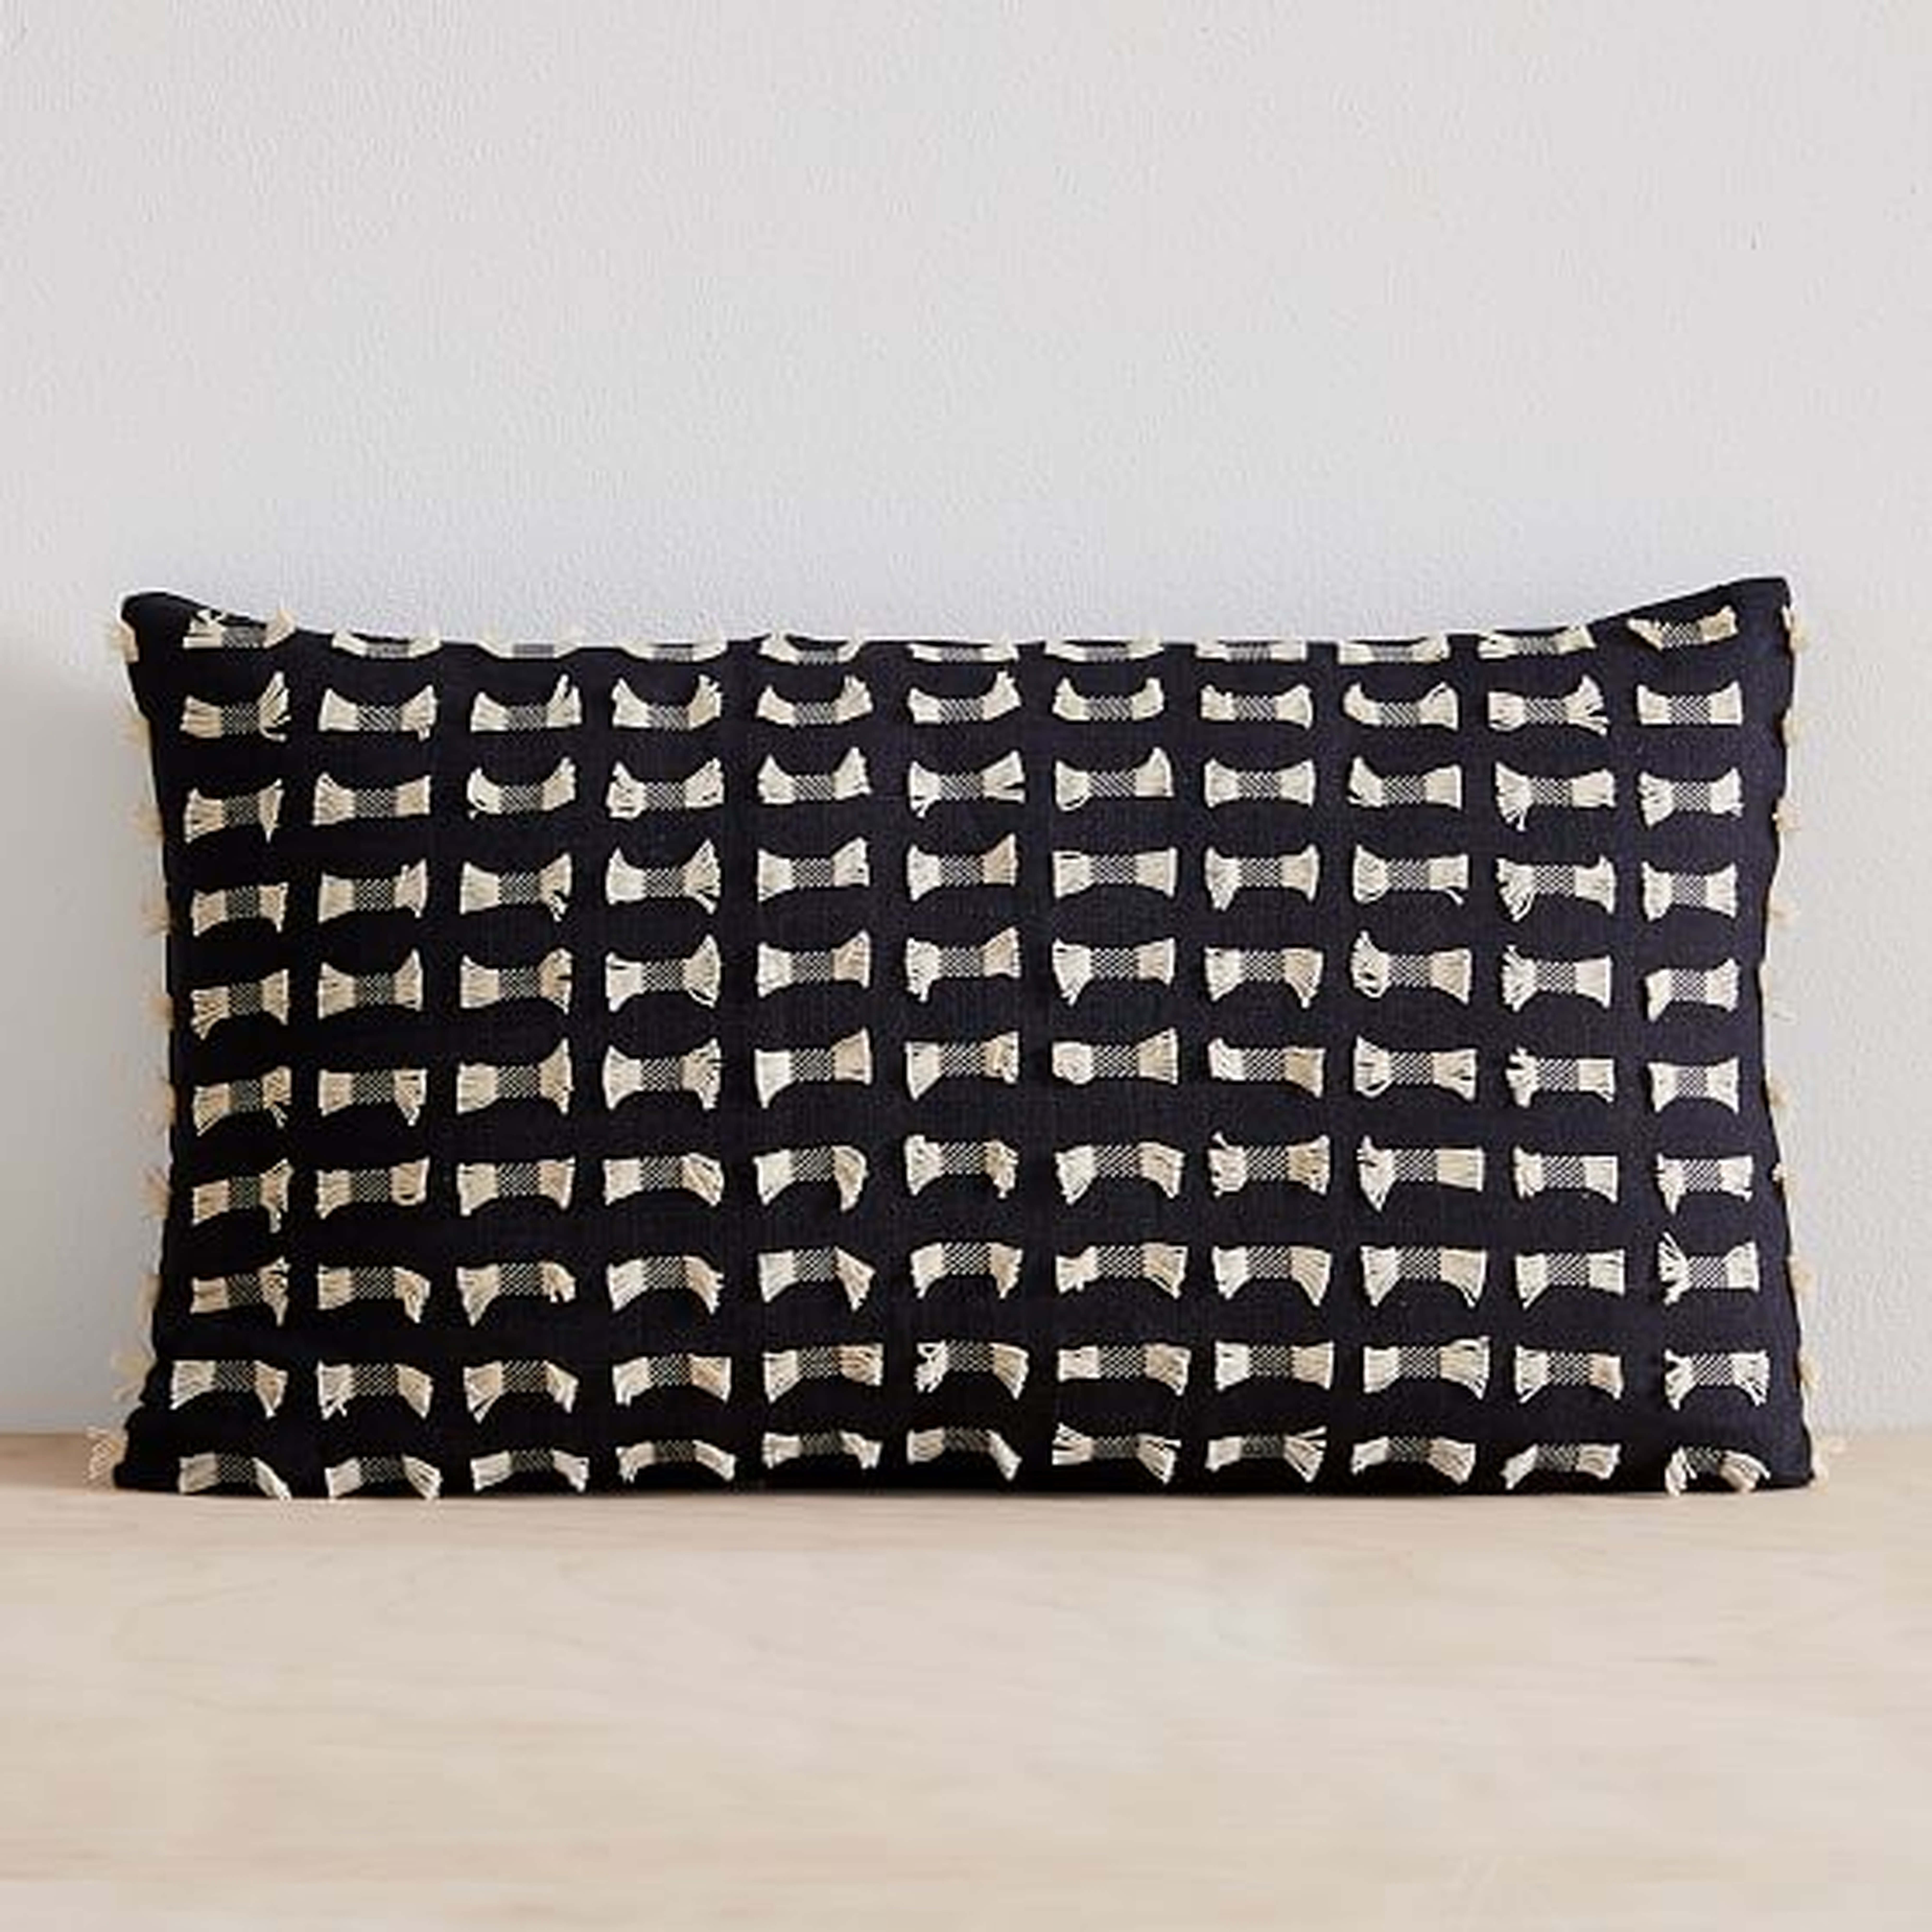 Cotton Silk Pixel Pillow Cover, 12"x21", Black - West Elm